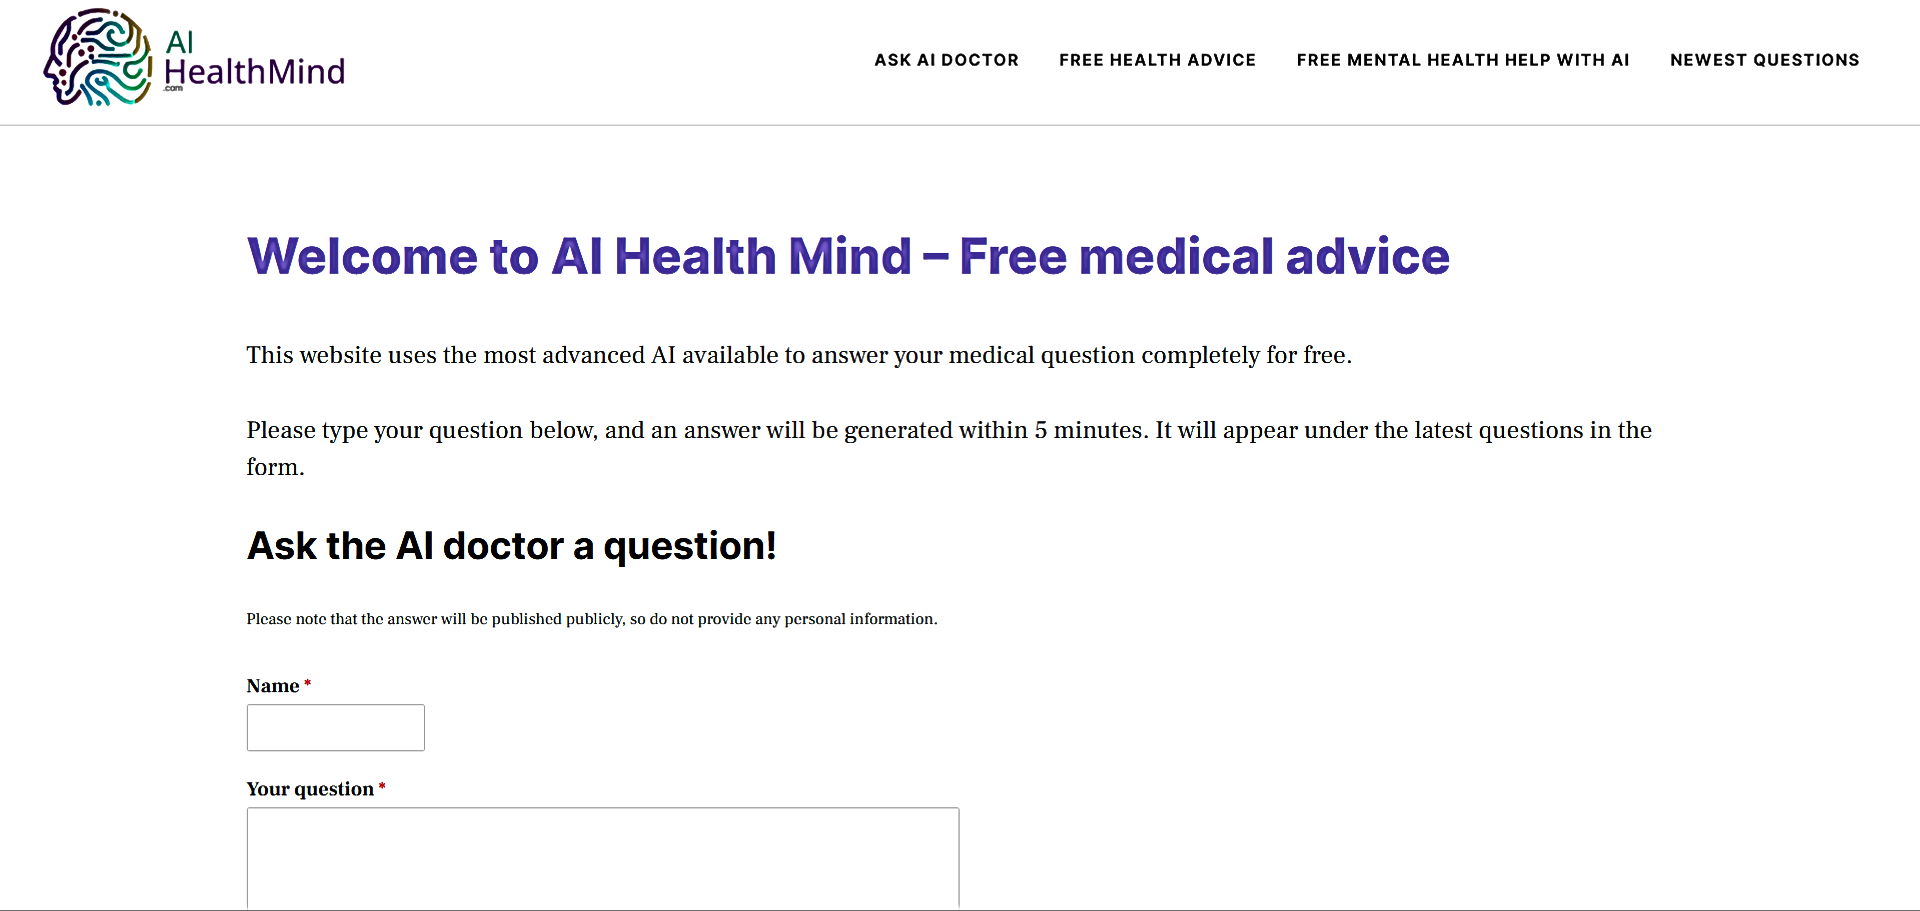 AI Health Mind featured